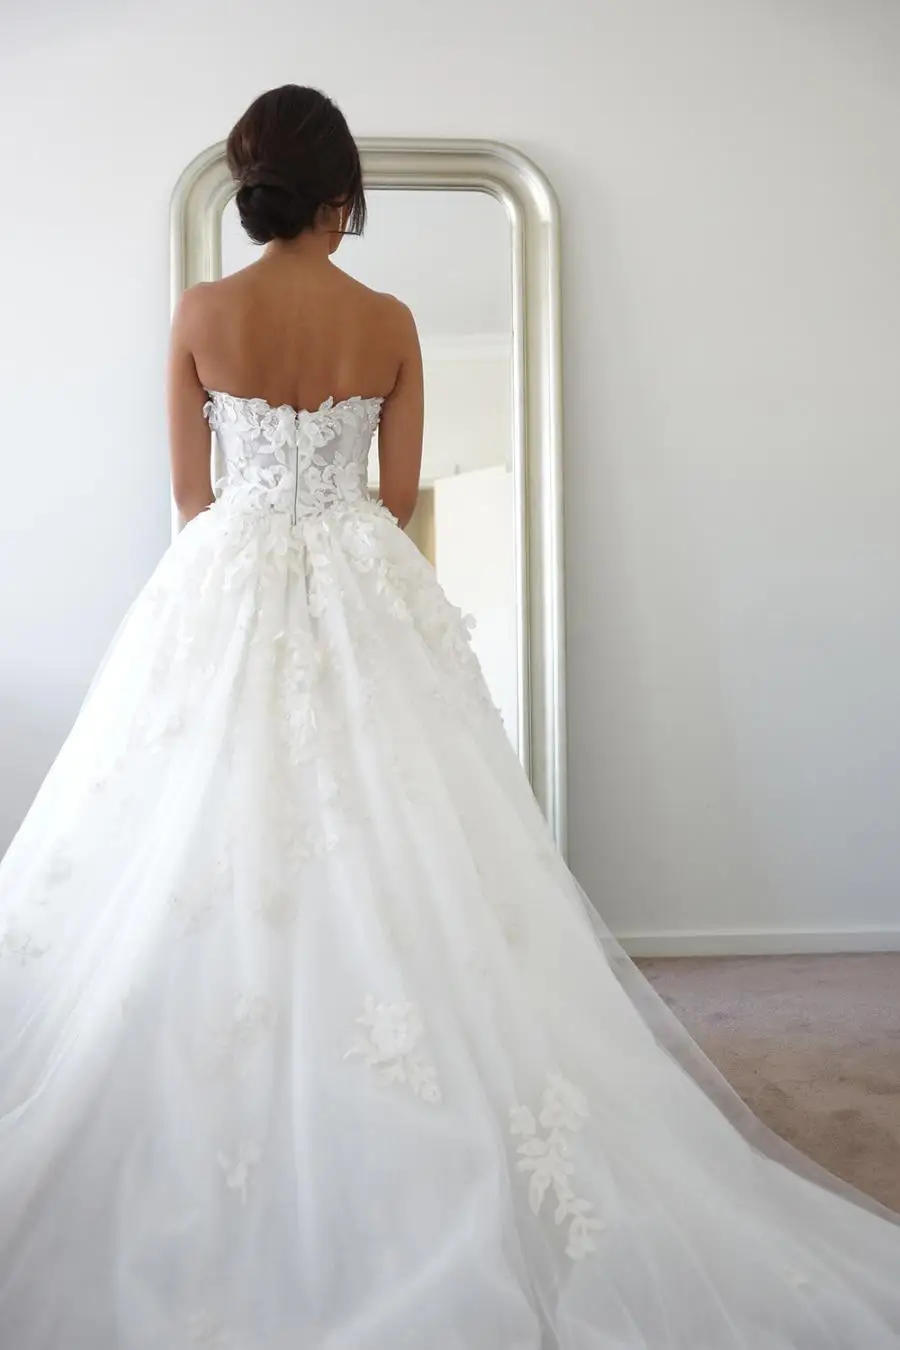 Vestido de noiva 2018 Элегантный Милая Тюль Аппликации кружево трапециевидной формы принцессы свадебные платье невесты мать невесты платья для